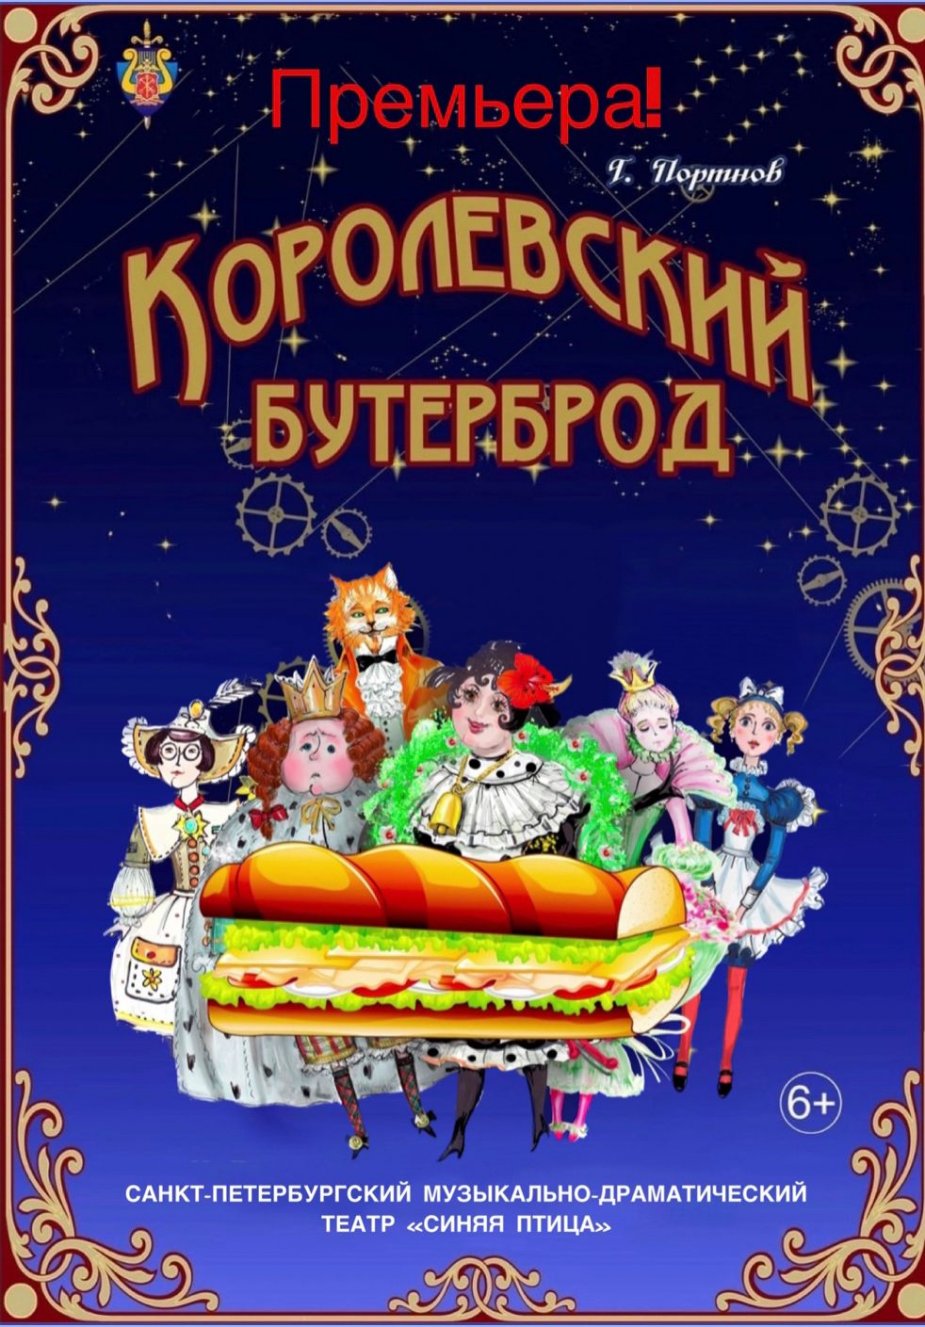 Театр "Синяя птица" представит премьеру  комедии "Королевский бутерброд"!